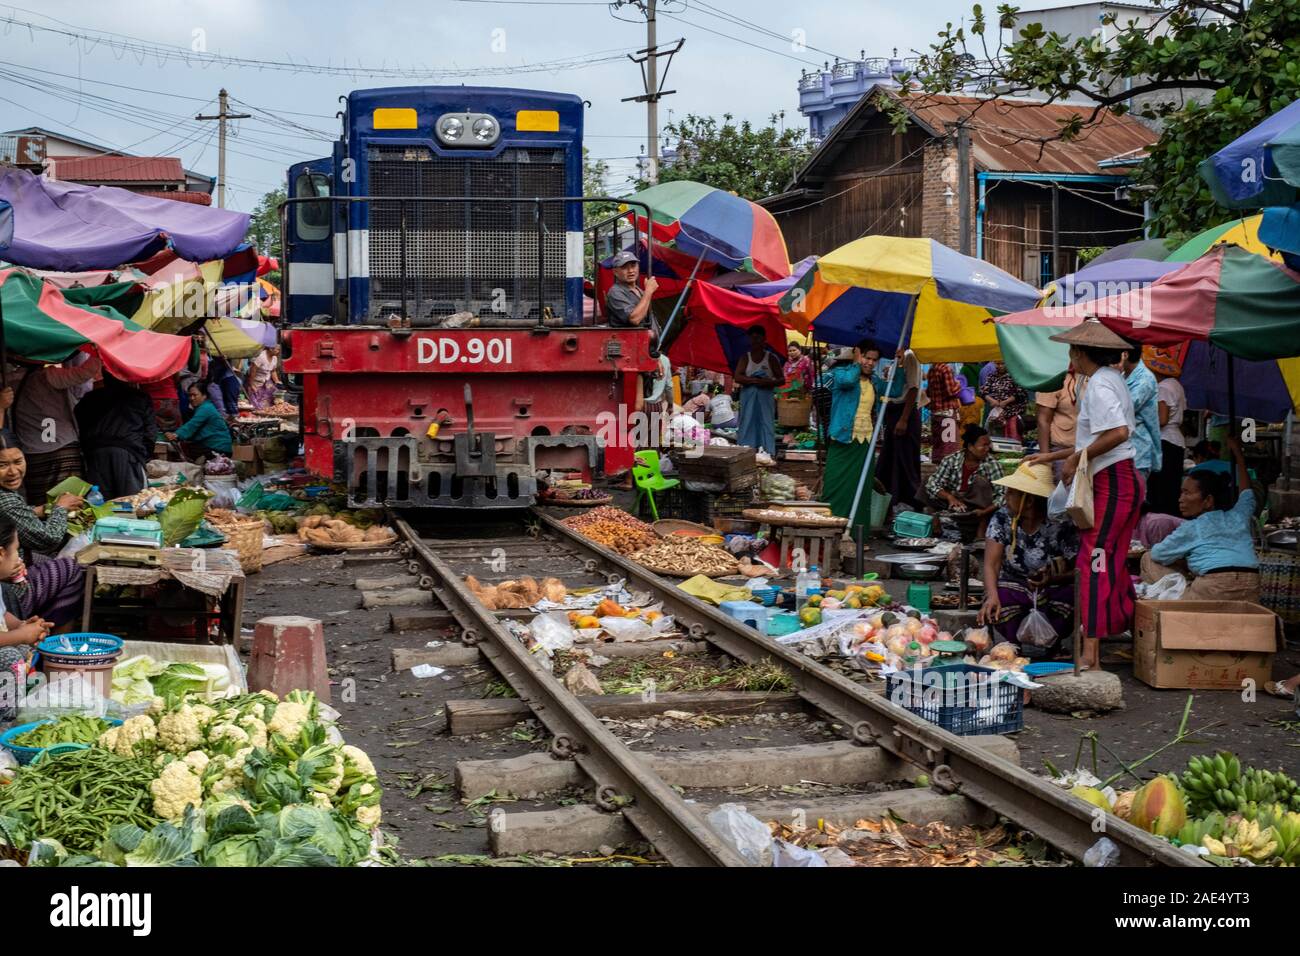 Die Eisenbahn Marktplatz auf den Spuren von einem lokalen Eisenbahn mit mobile Marktstände, Anbietern und Sonnenschirme in Mandalay, Myanmar (Birma) Stockfoto